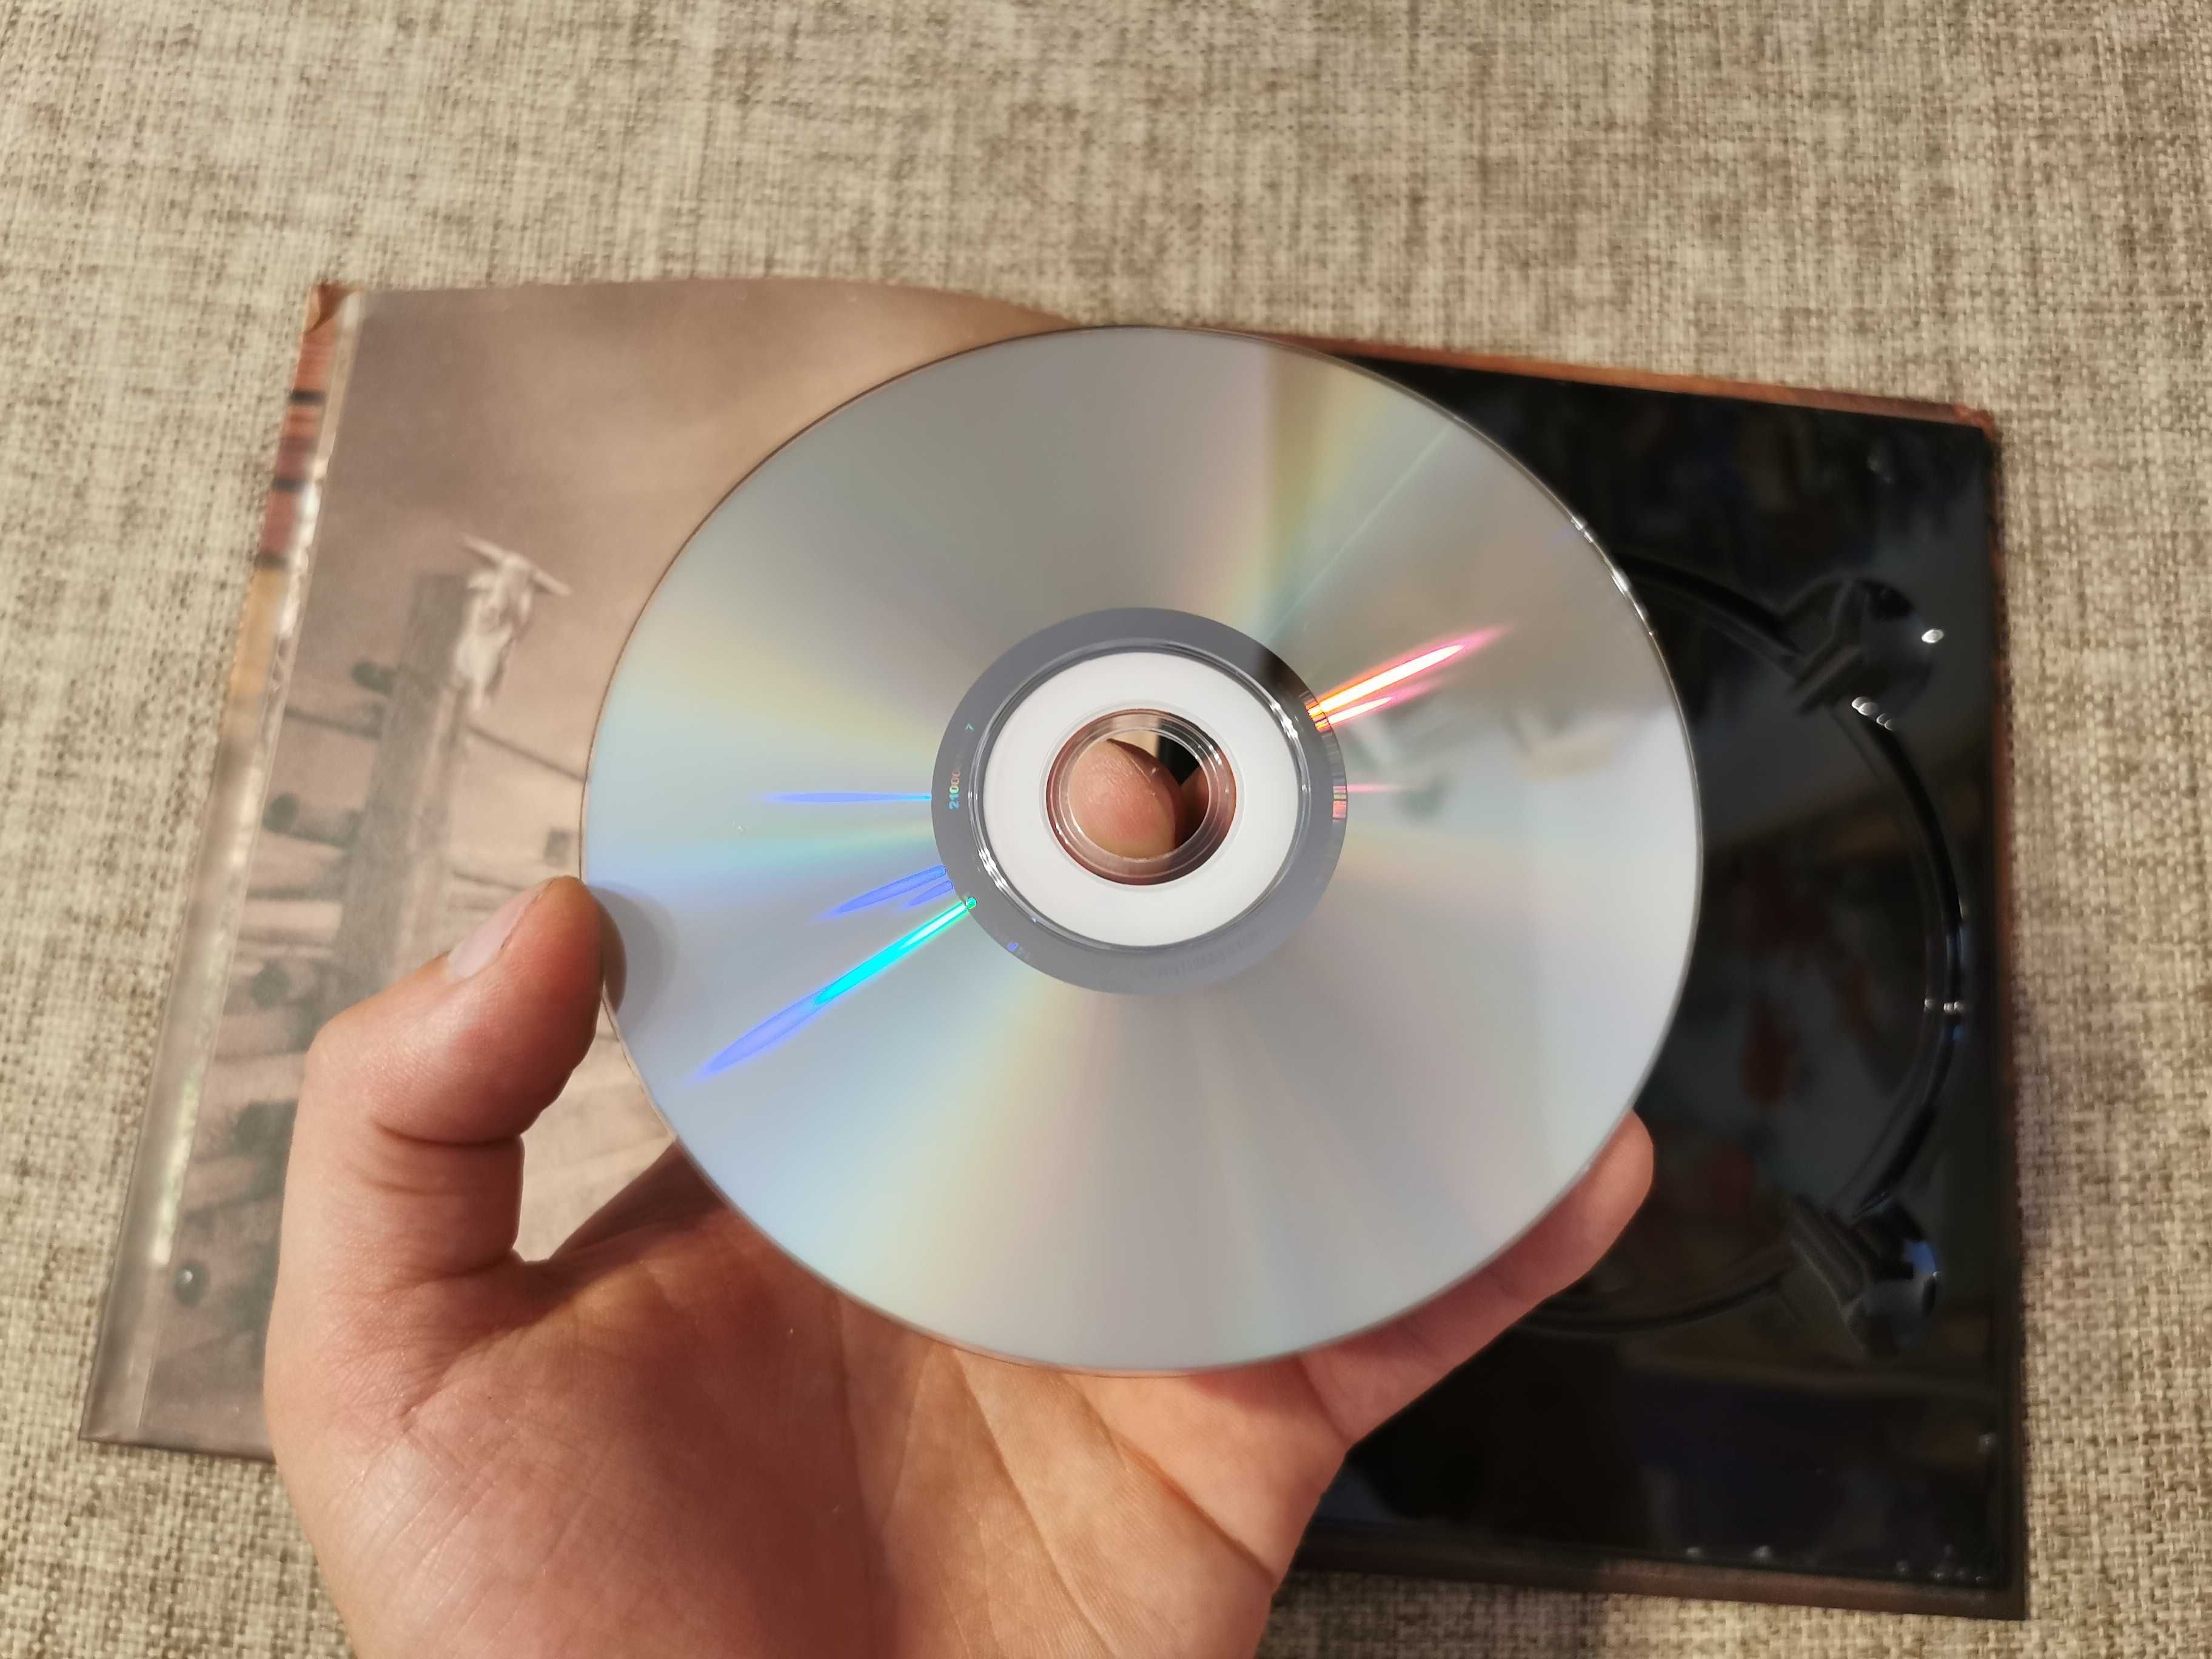 Film DVD - Butch Cassidy i Sundance Kid - Kolekcja Westernów